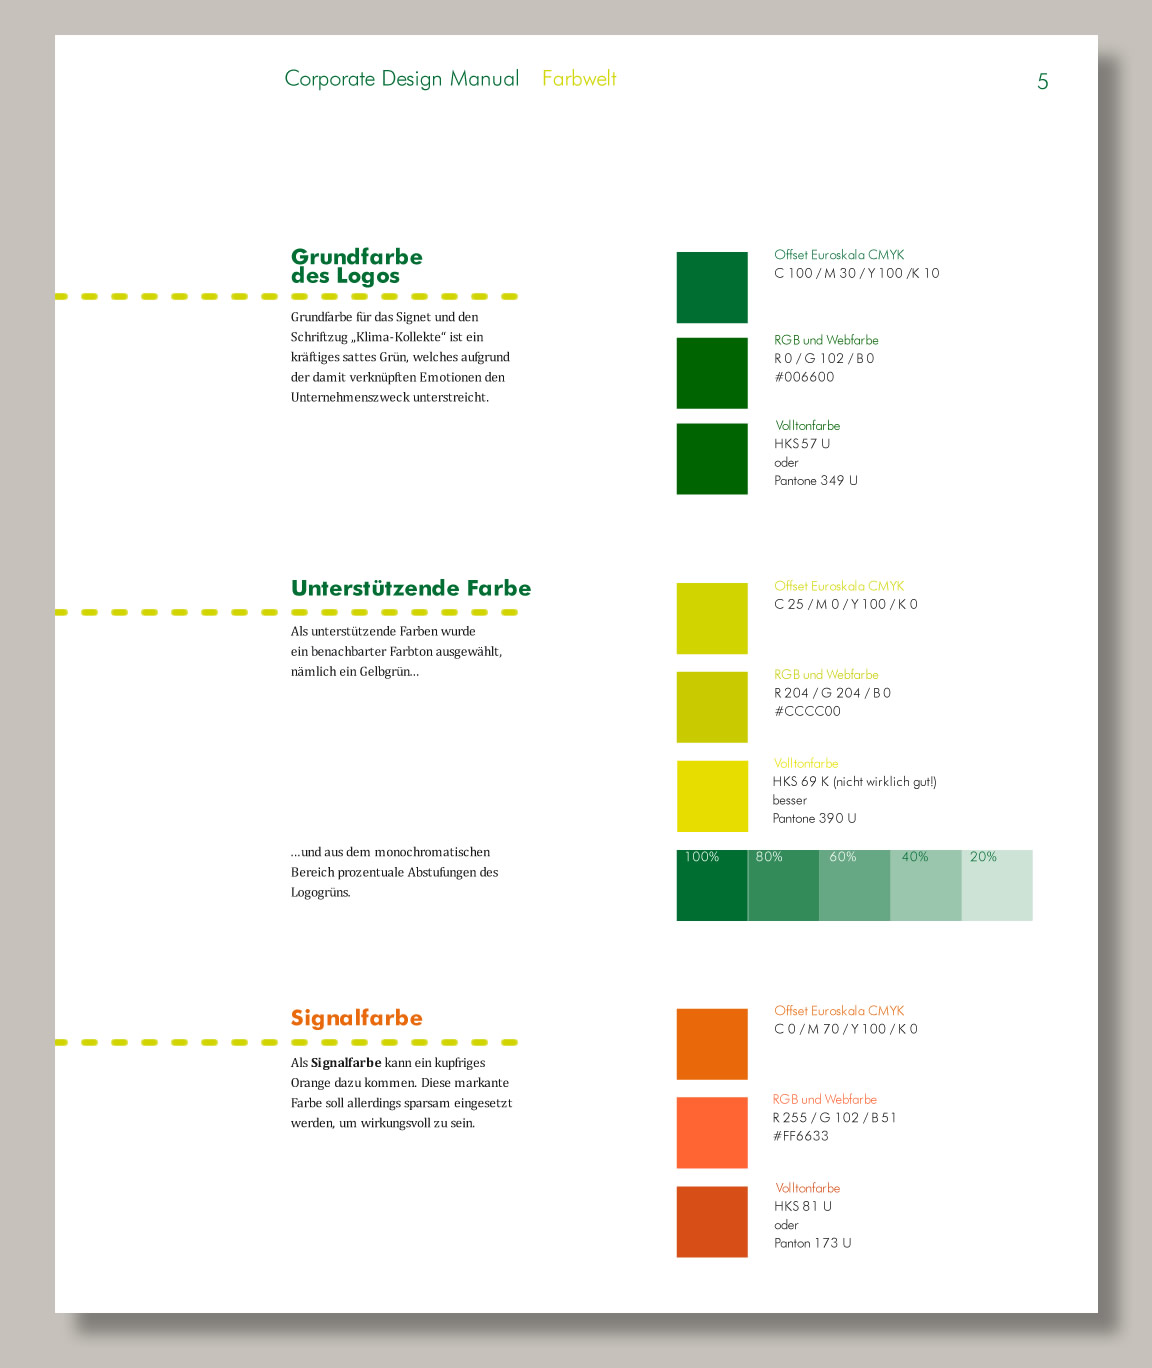 Manual zur Handhabung des Corporate Designs, Gestaltung Büro für GrafikDesign und Illustration in Kooperation mit Ari Gröbke Design